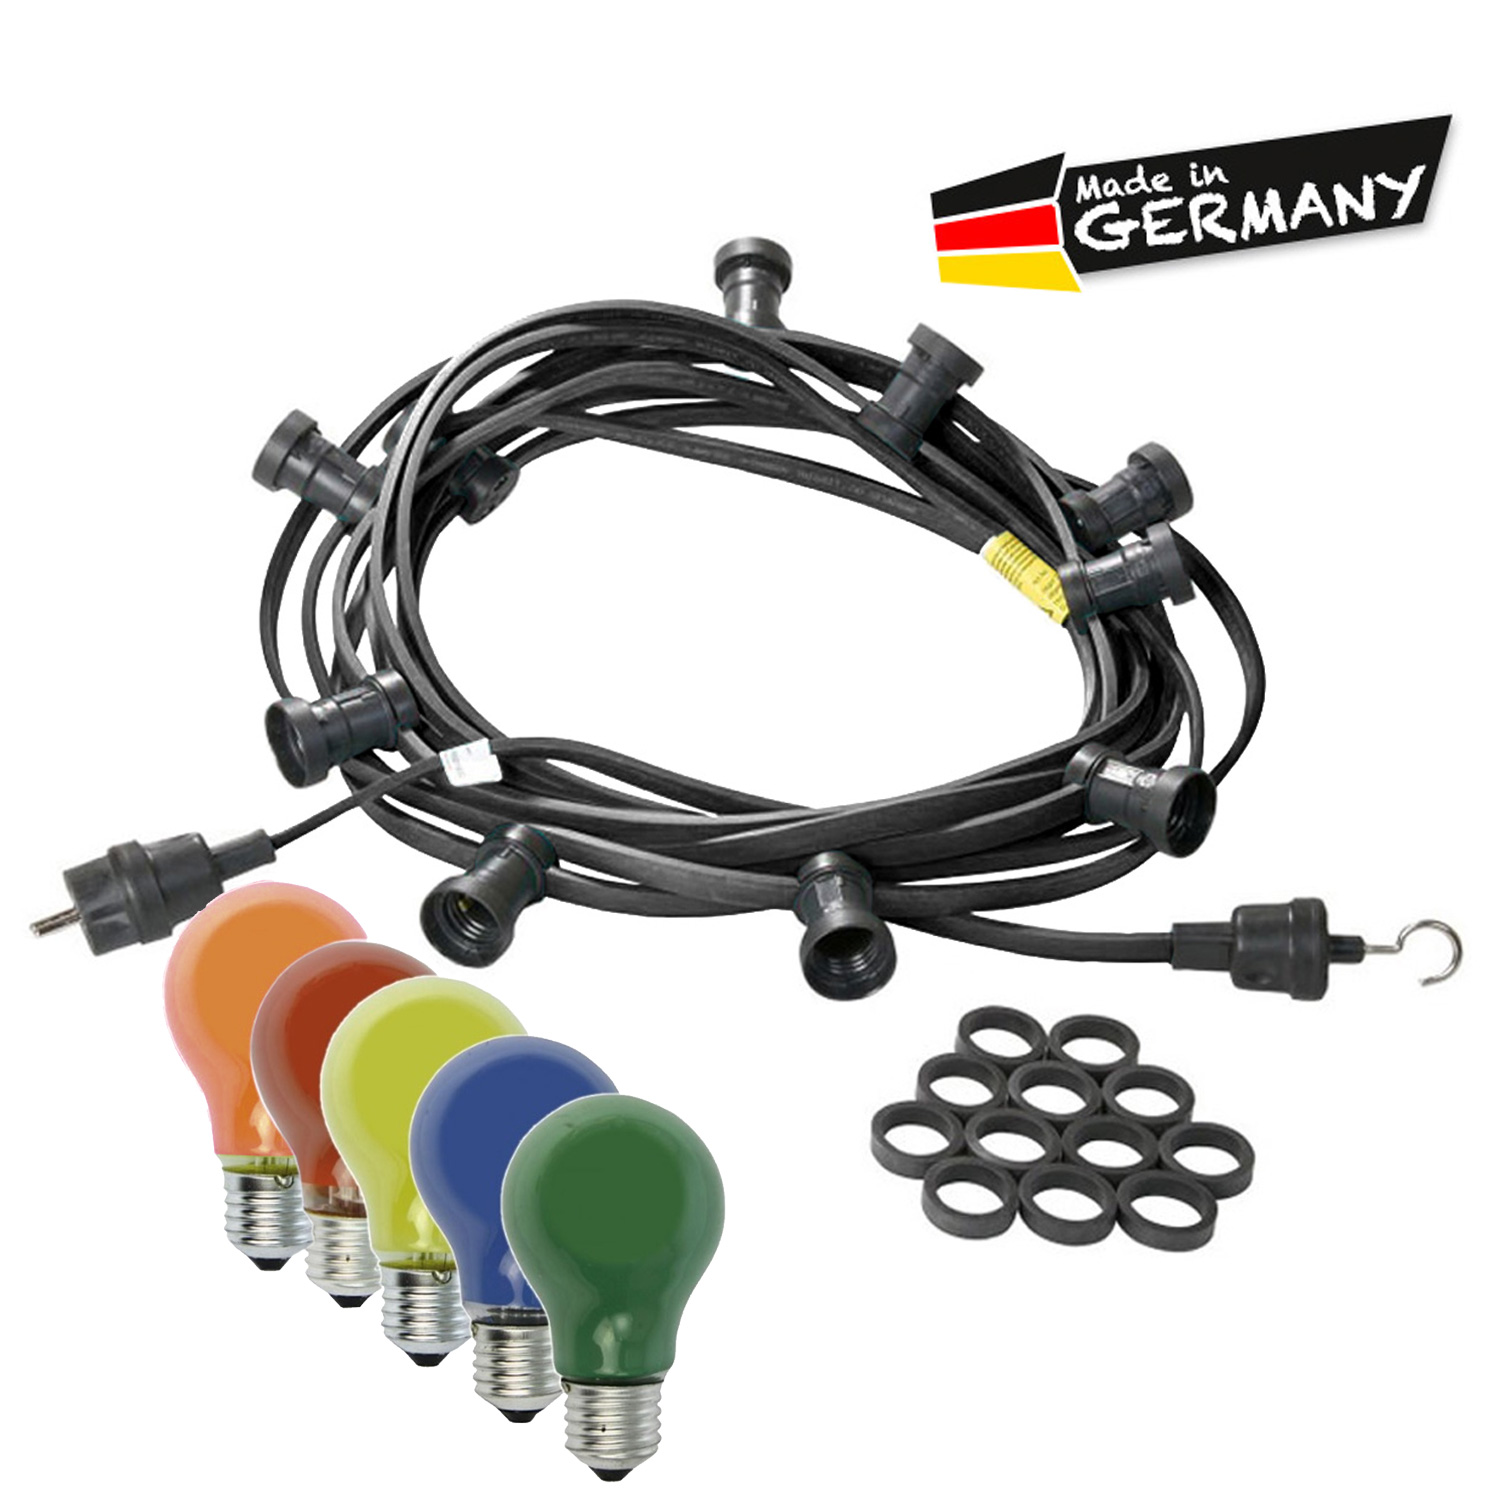 Illu-/Partylichterkette 20m - Außenlichterkette schwarz - Made in Germany - 30 bunte 25W Glühlampen